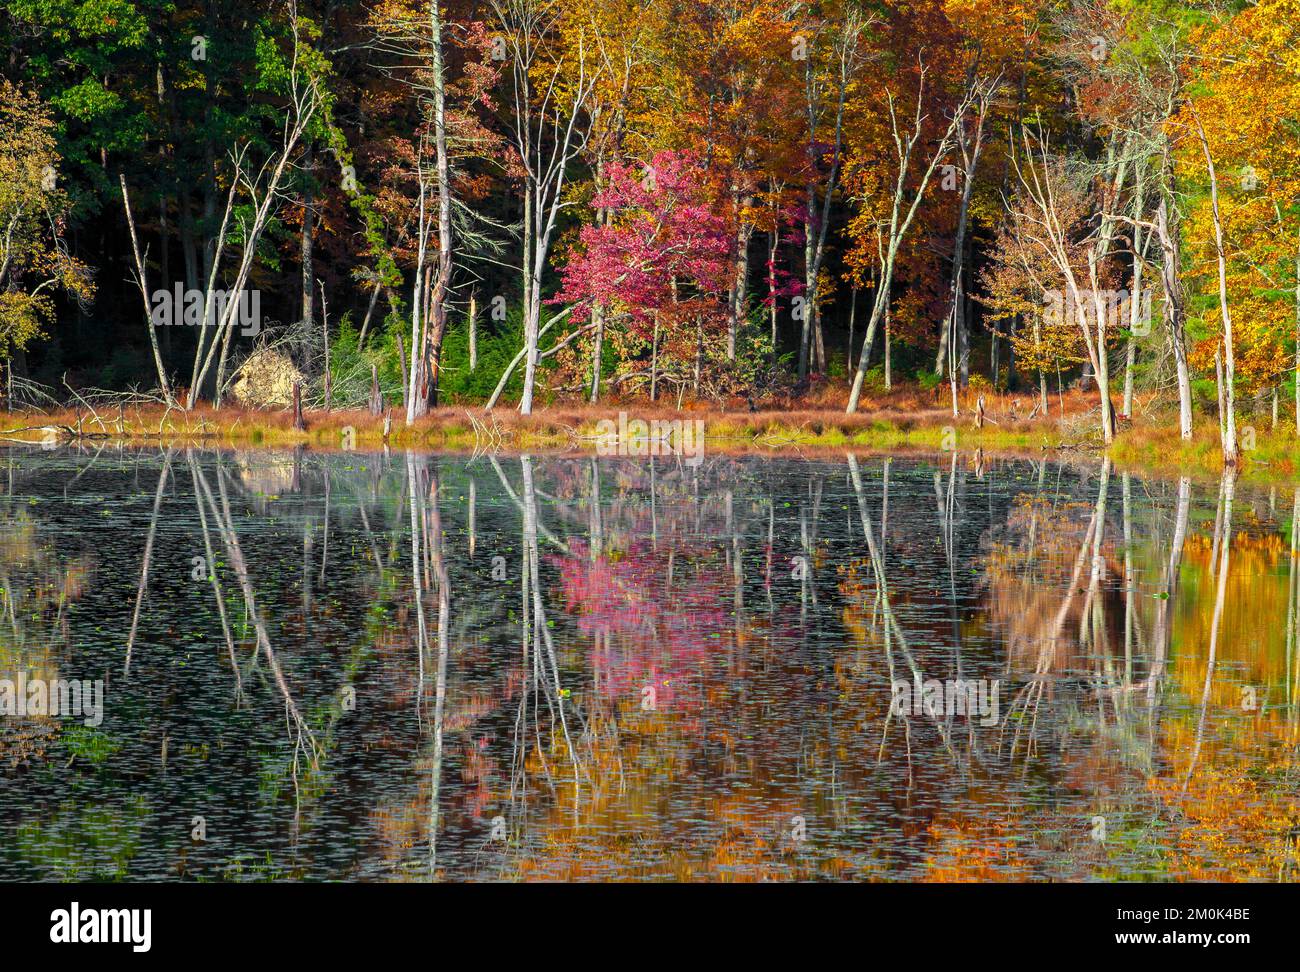 Egypt Mills Pond dans l'eau de Delsaware Gap National Recreation Area, Pennsylvanie est une région populaire pour la faune et la flore et est classé comme une zone d'oiseaux important. Banque D'Images